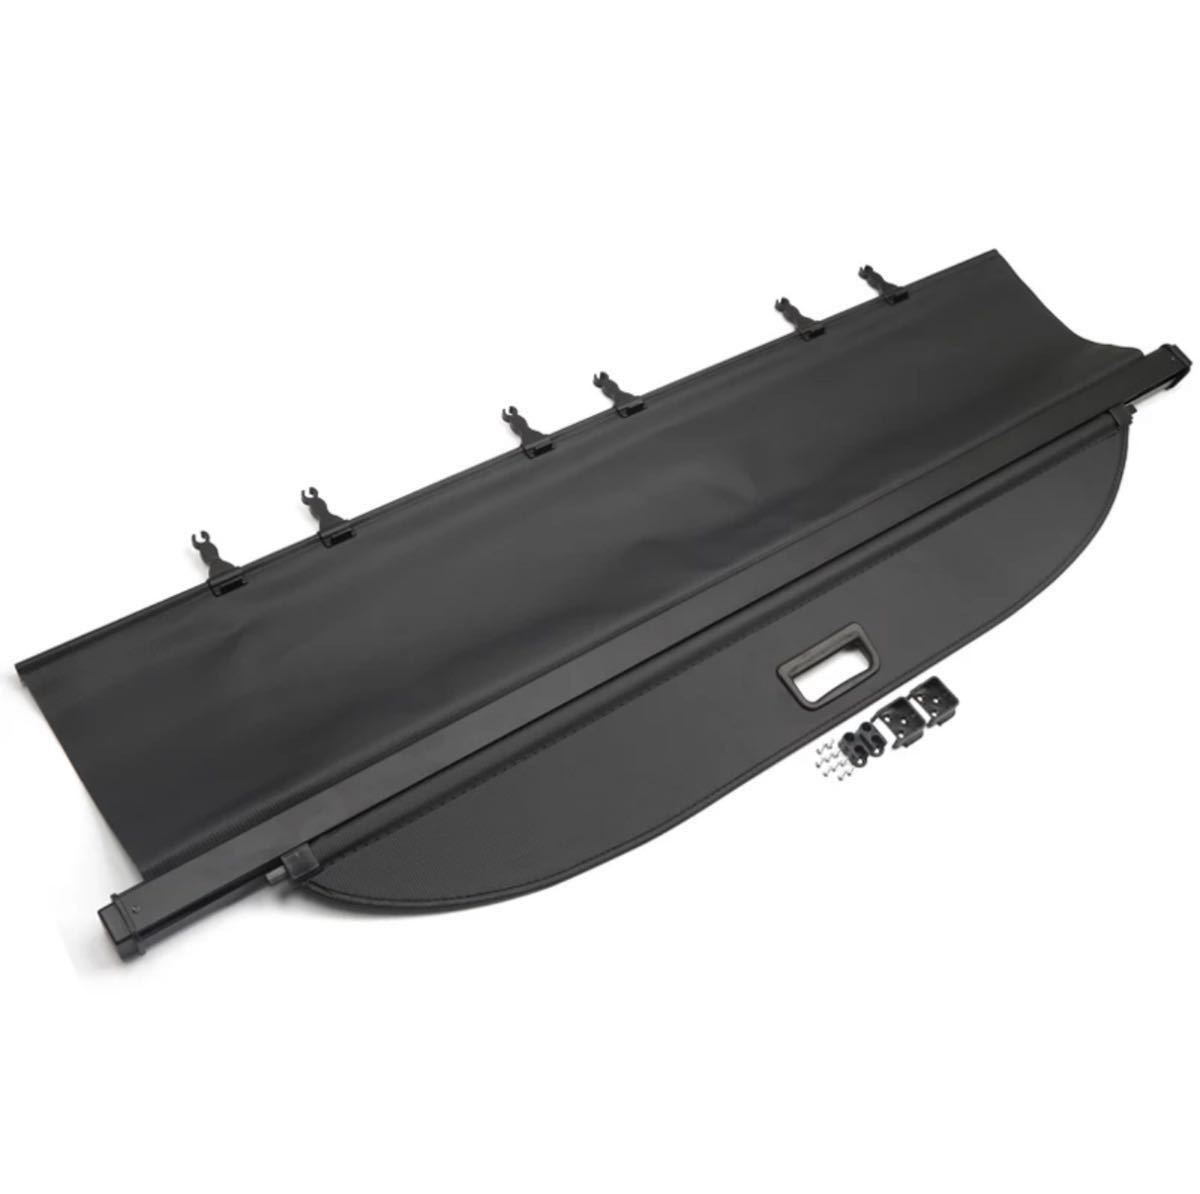  Ford Explorer 2011-2018 интерьер чёрного цвета аксессуары задний багажник складывание тип покрытие багажный коврик покрытие пола багажника 